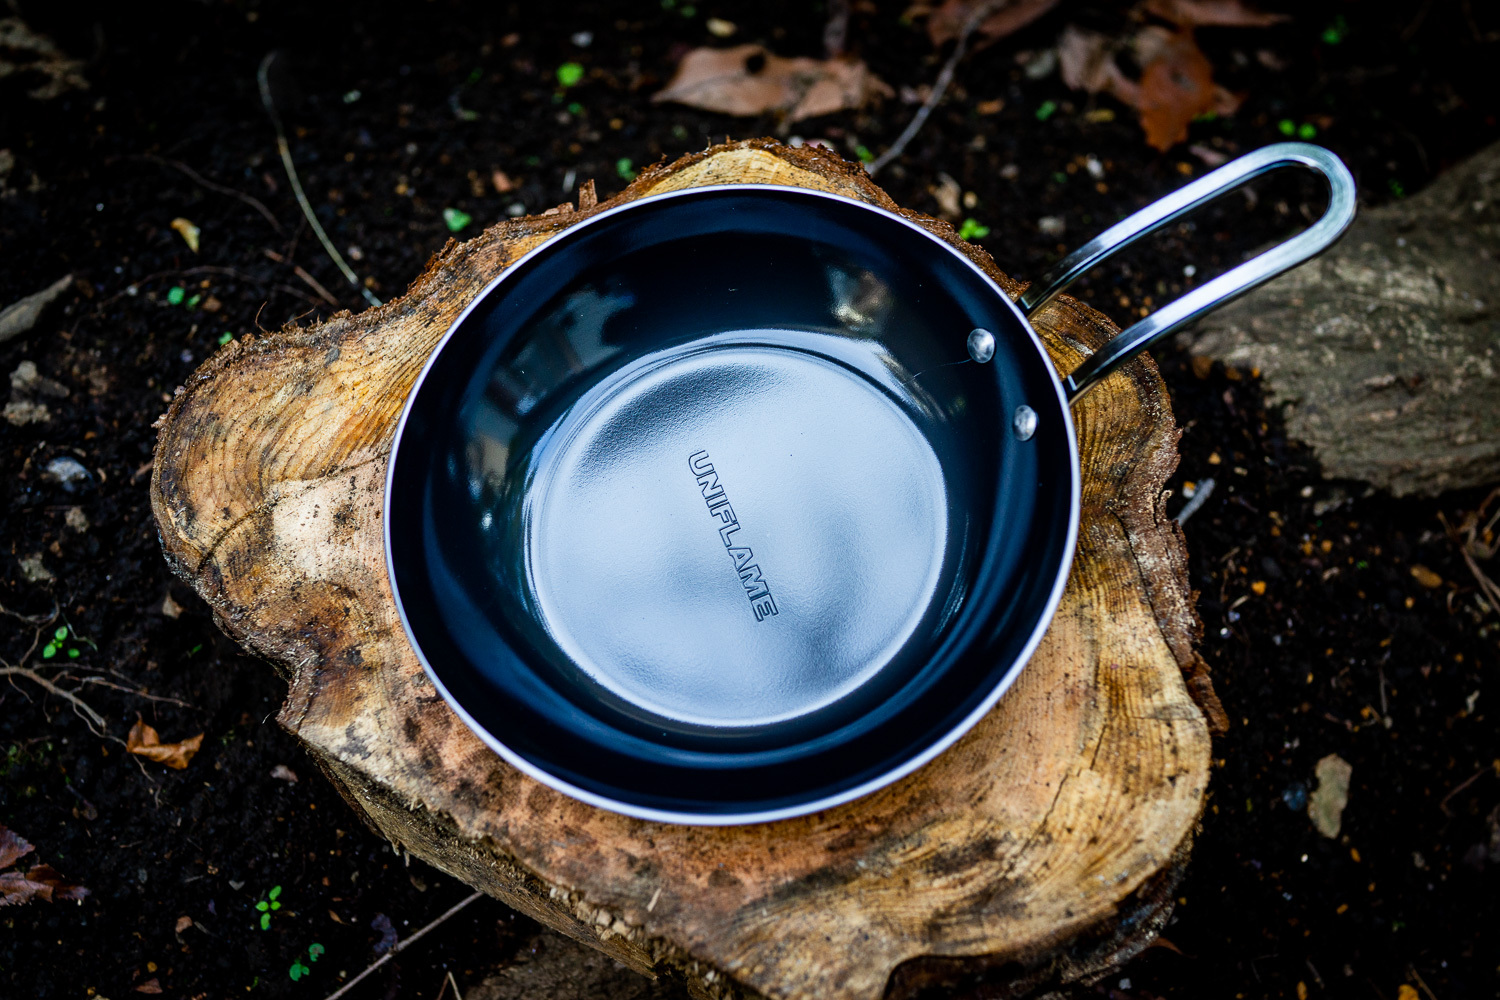 ソロキャンプにおすすめのフライパンはコレ 料理の幅を広げよう 調理器具 食器 Be Pal キャンプ アウトドア 自然派生活の情報源ビーパル